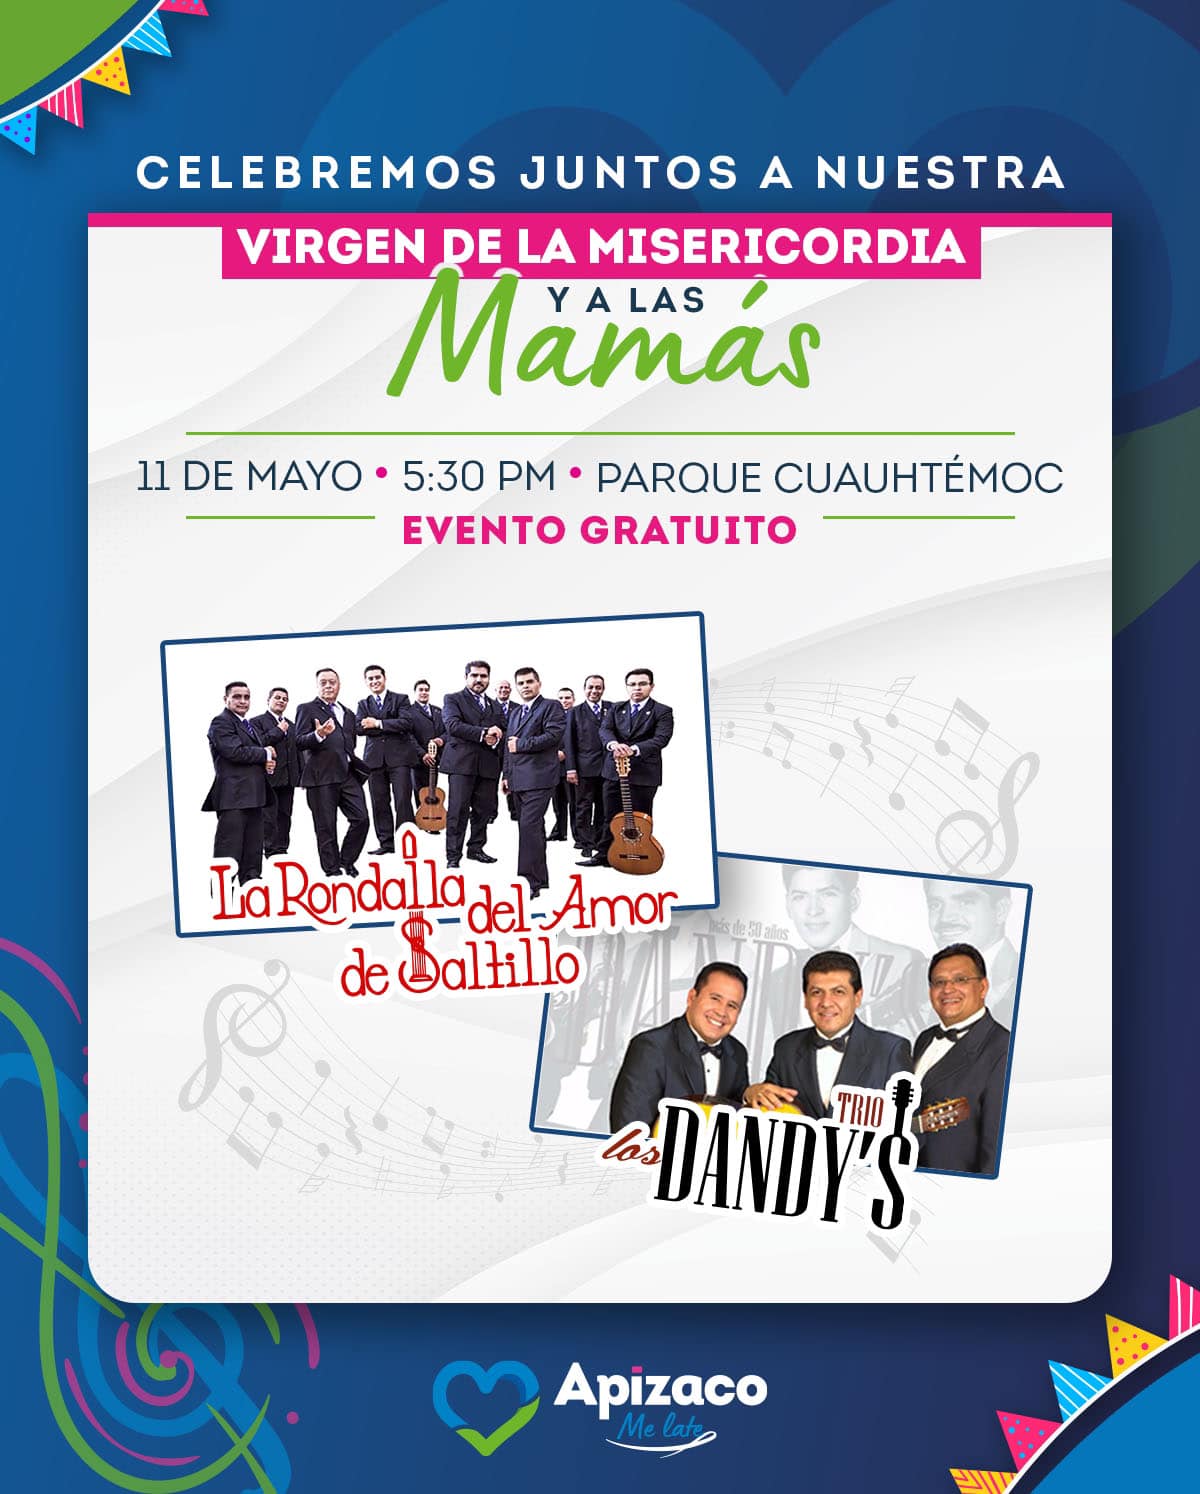 Invita alcalde de Apizaco a concierto por el día de las madres